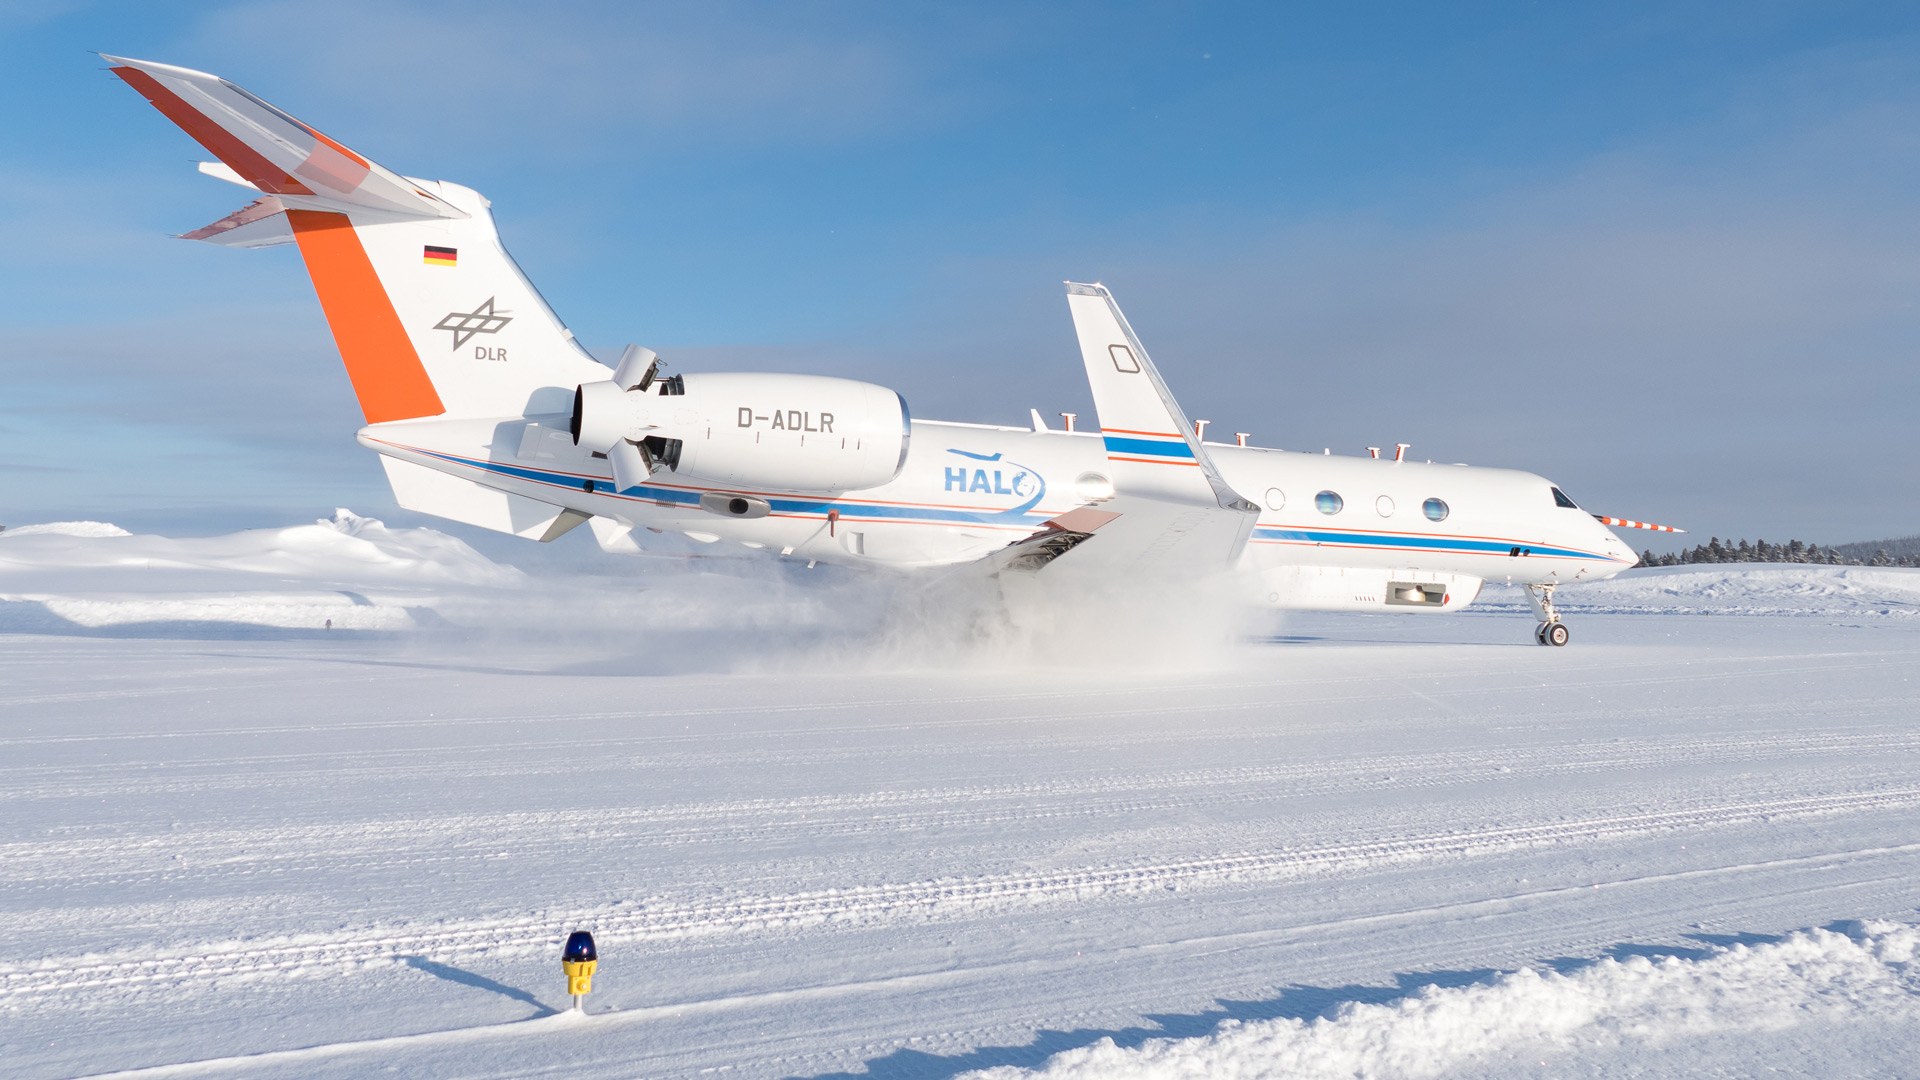 HALO landing in snowy landscape